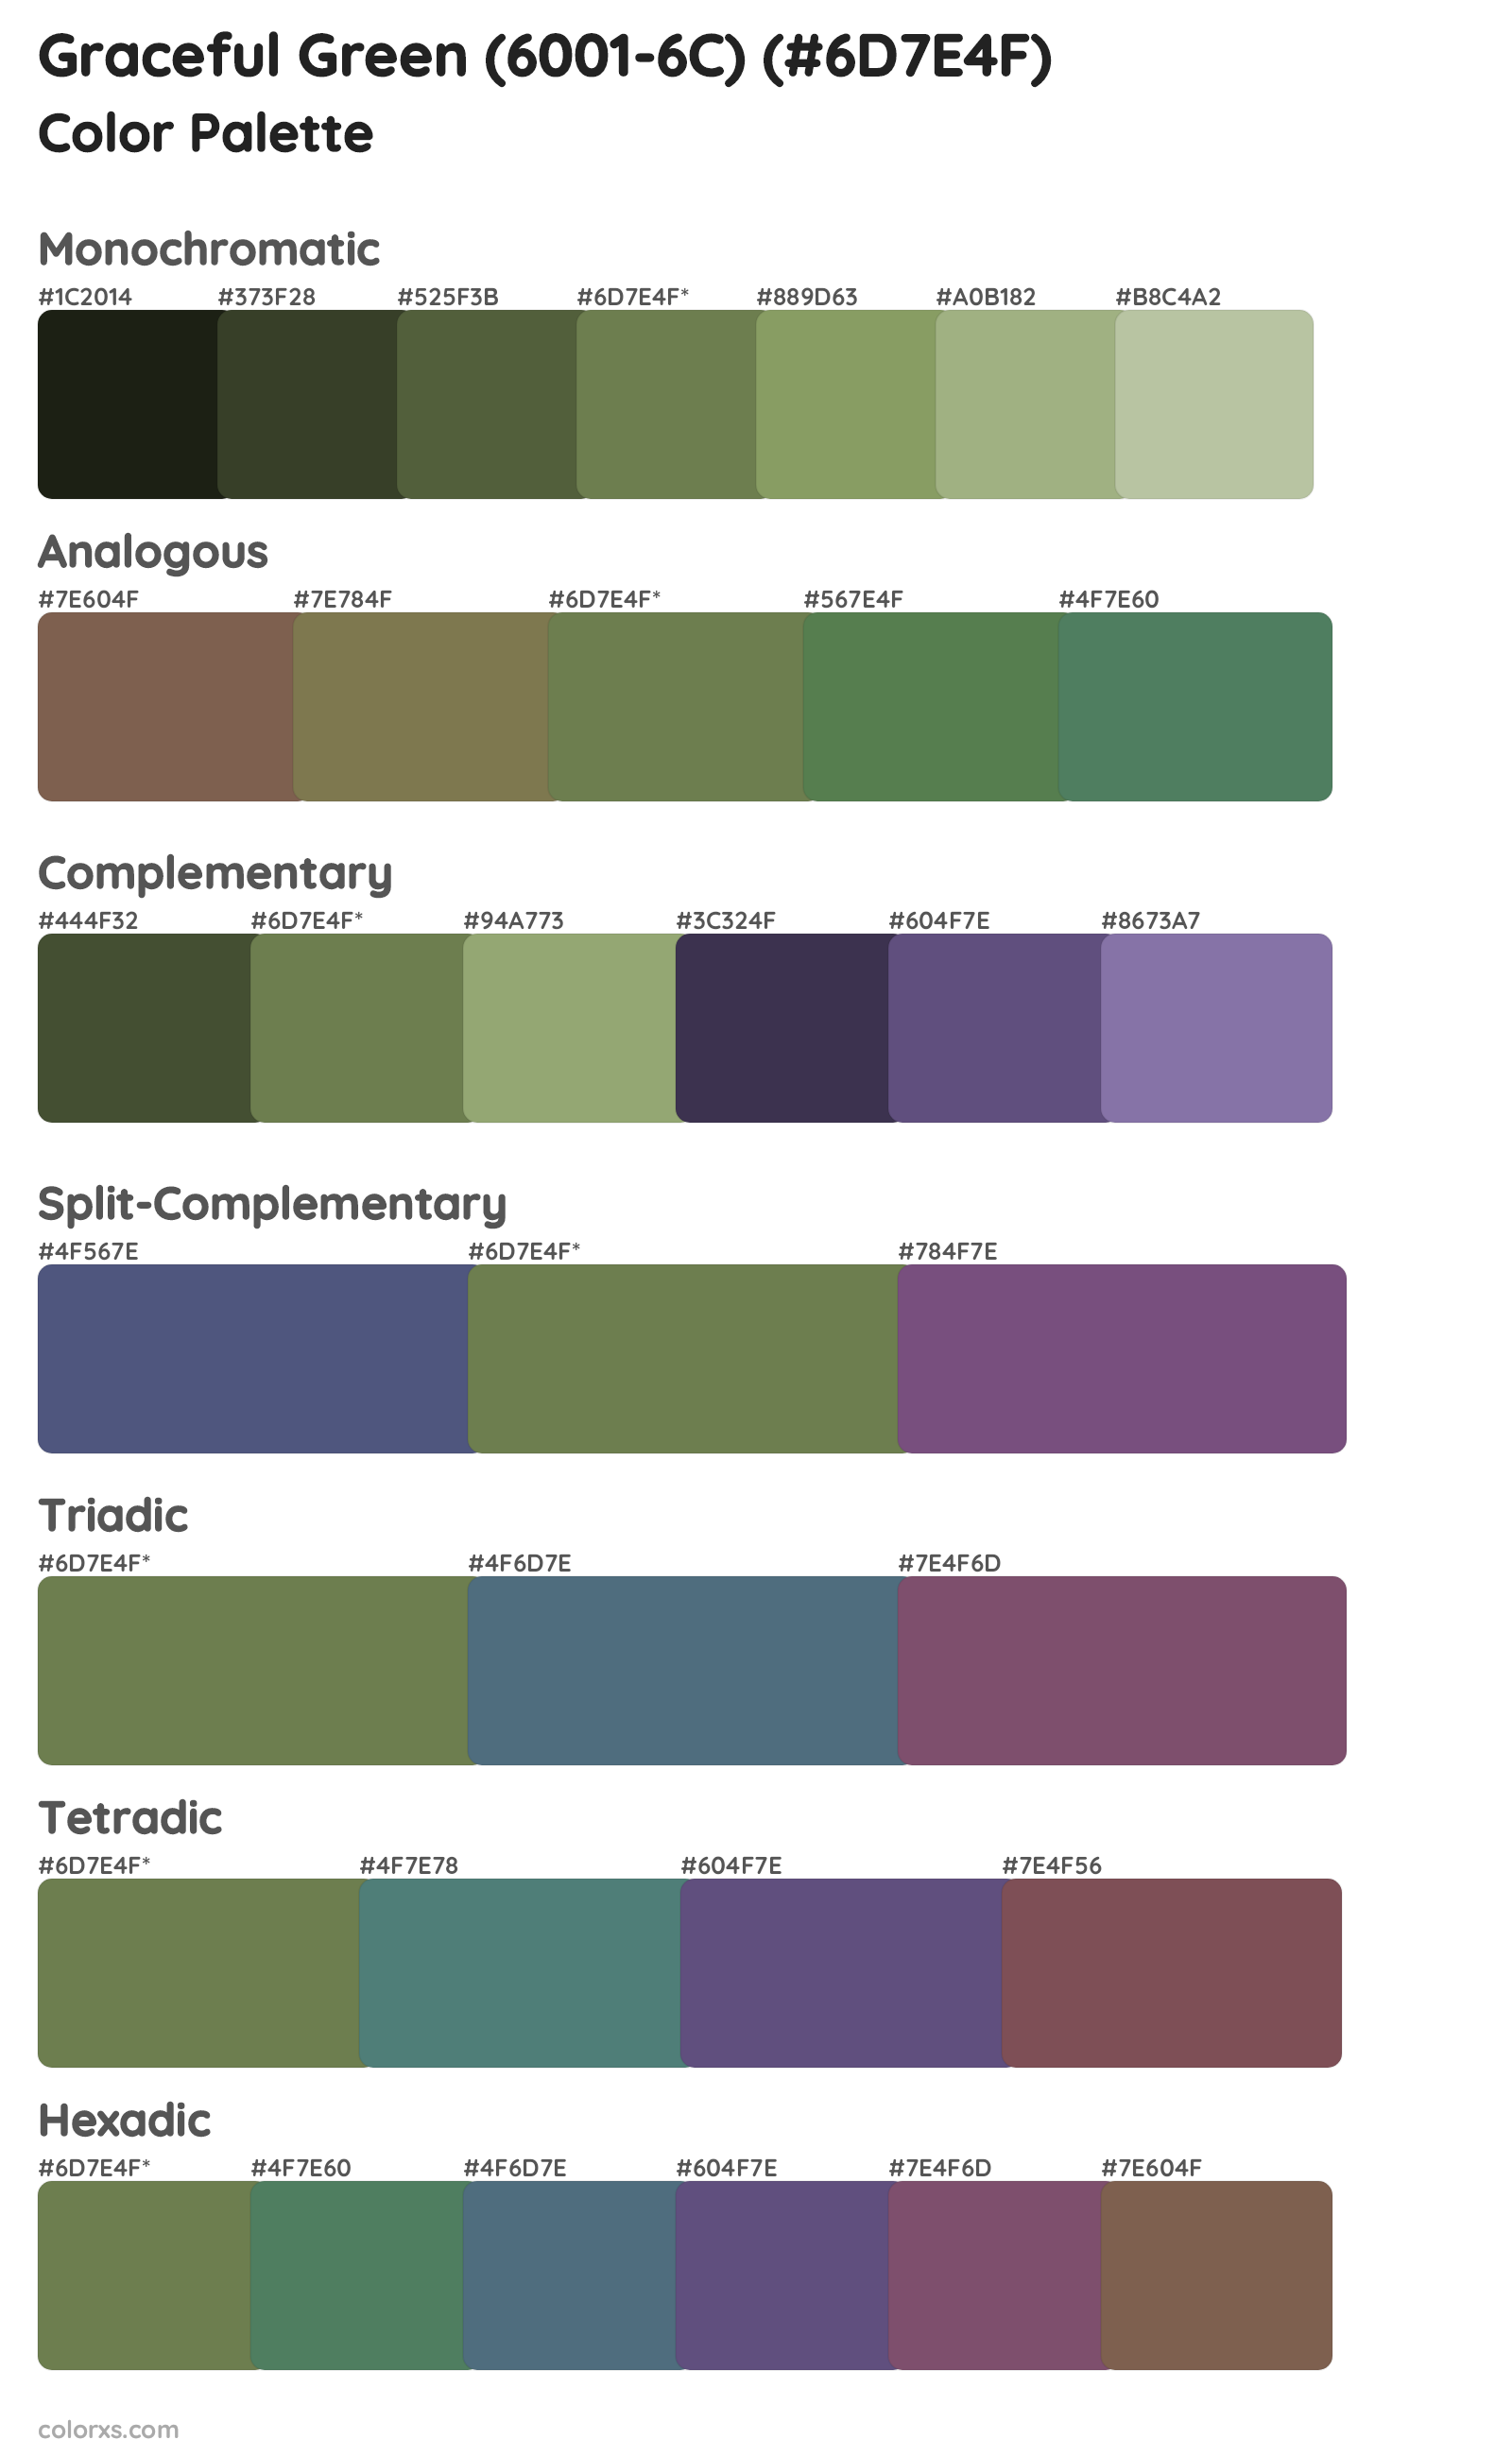 Graceful Green (6001-6C) Color Scheme Palettes